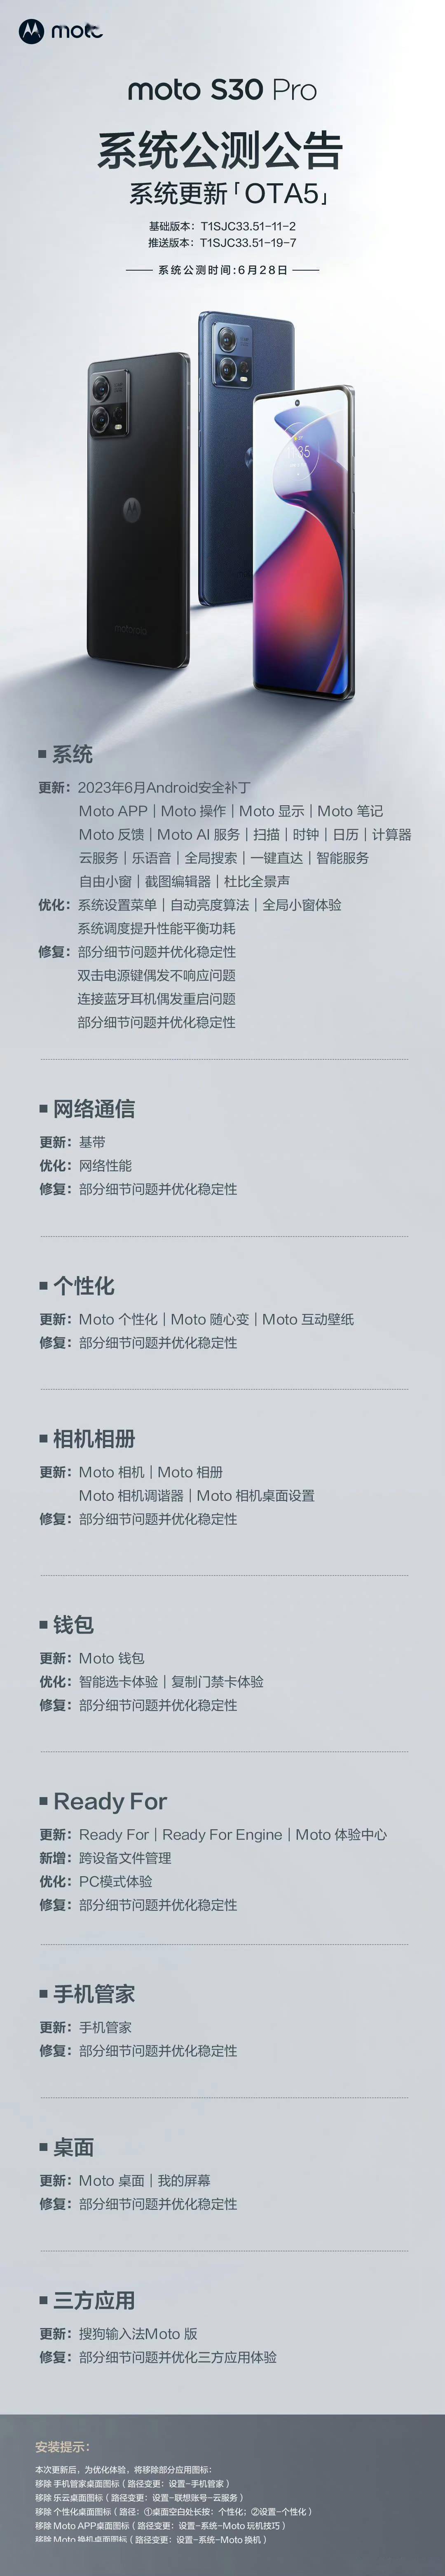 摩托罗拉S30 Pro手机获推MYUI5.0更新 移除Moto换机桌面图标